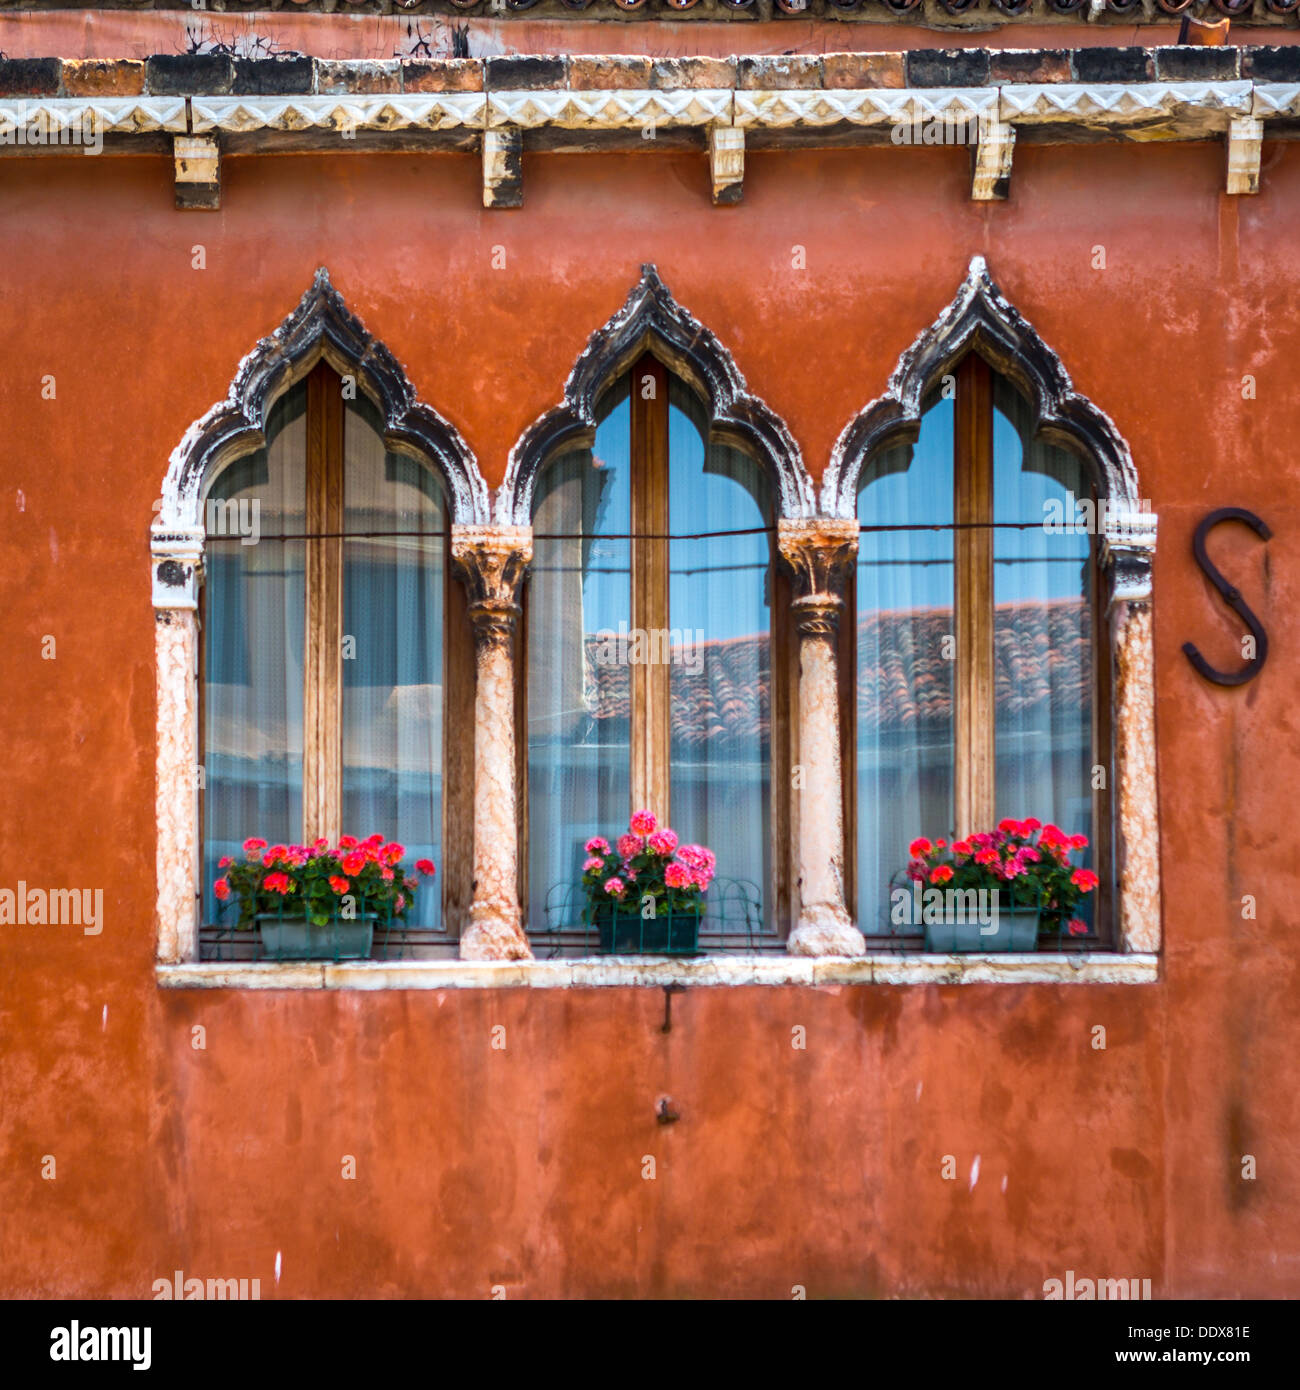 Typischen Fenstern und einer bunten Wand in Murano, Venedig, Italien Stockfoto